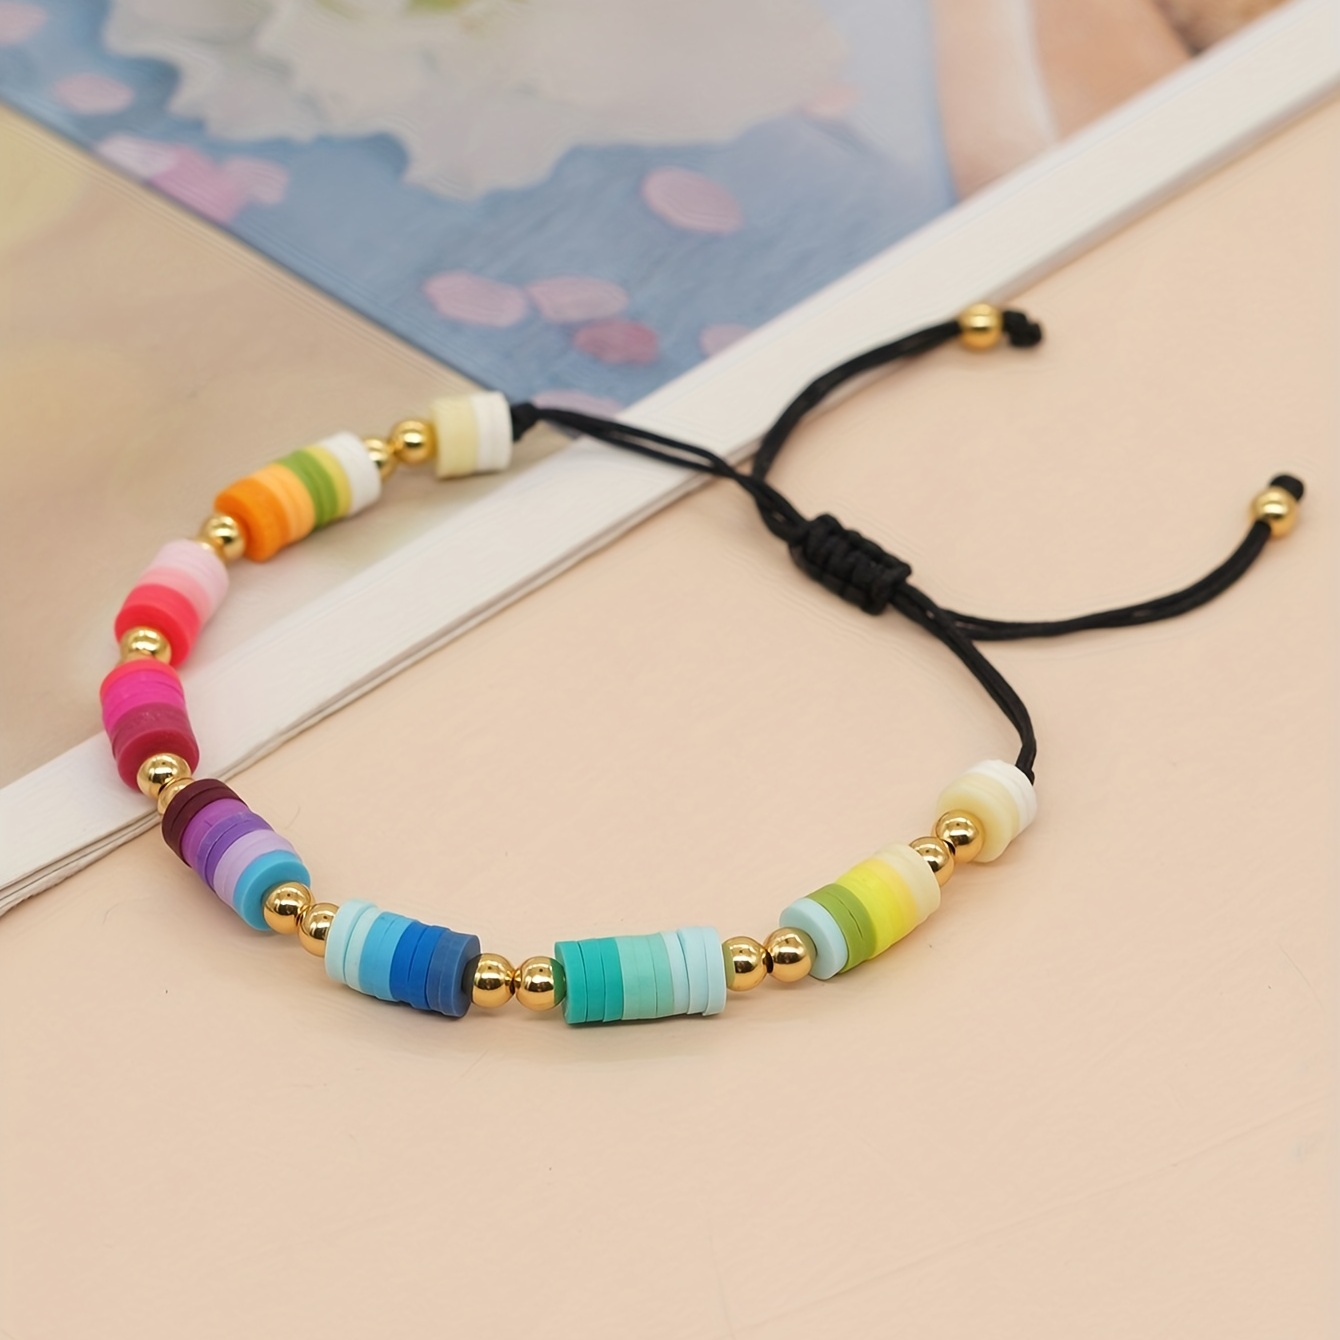 Handmade Bff Heart Beaded Stretchy Bracelet For Girls - Temu